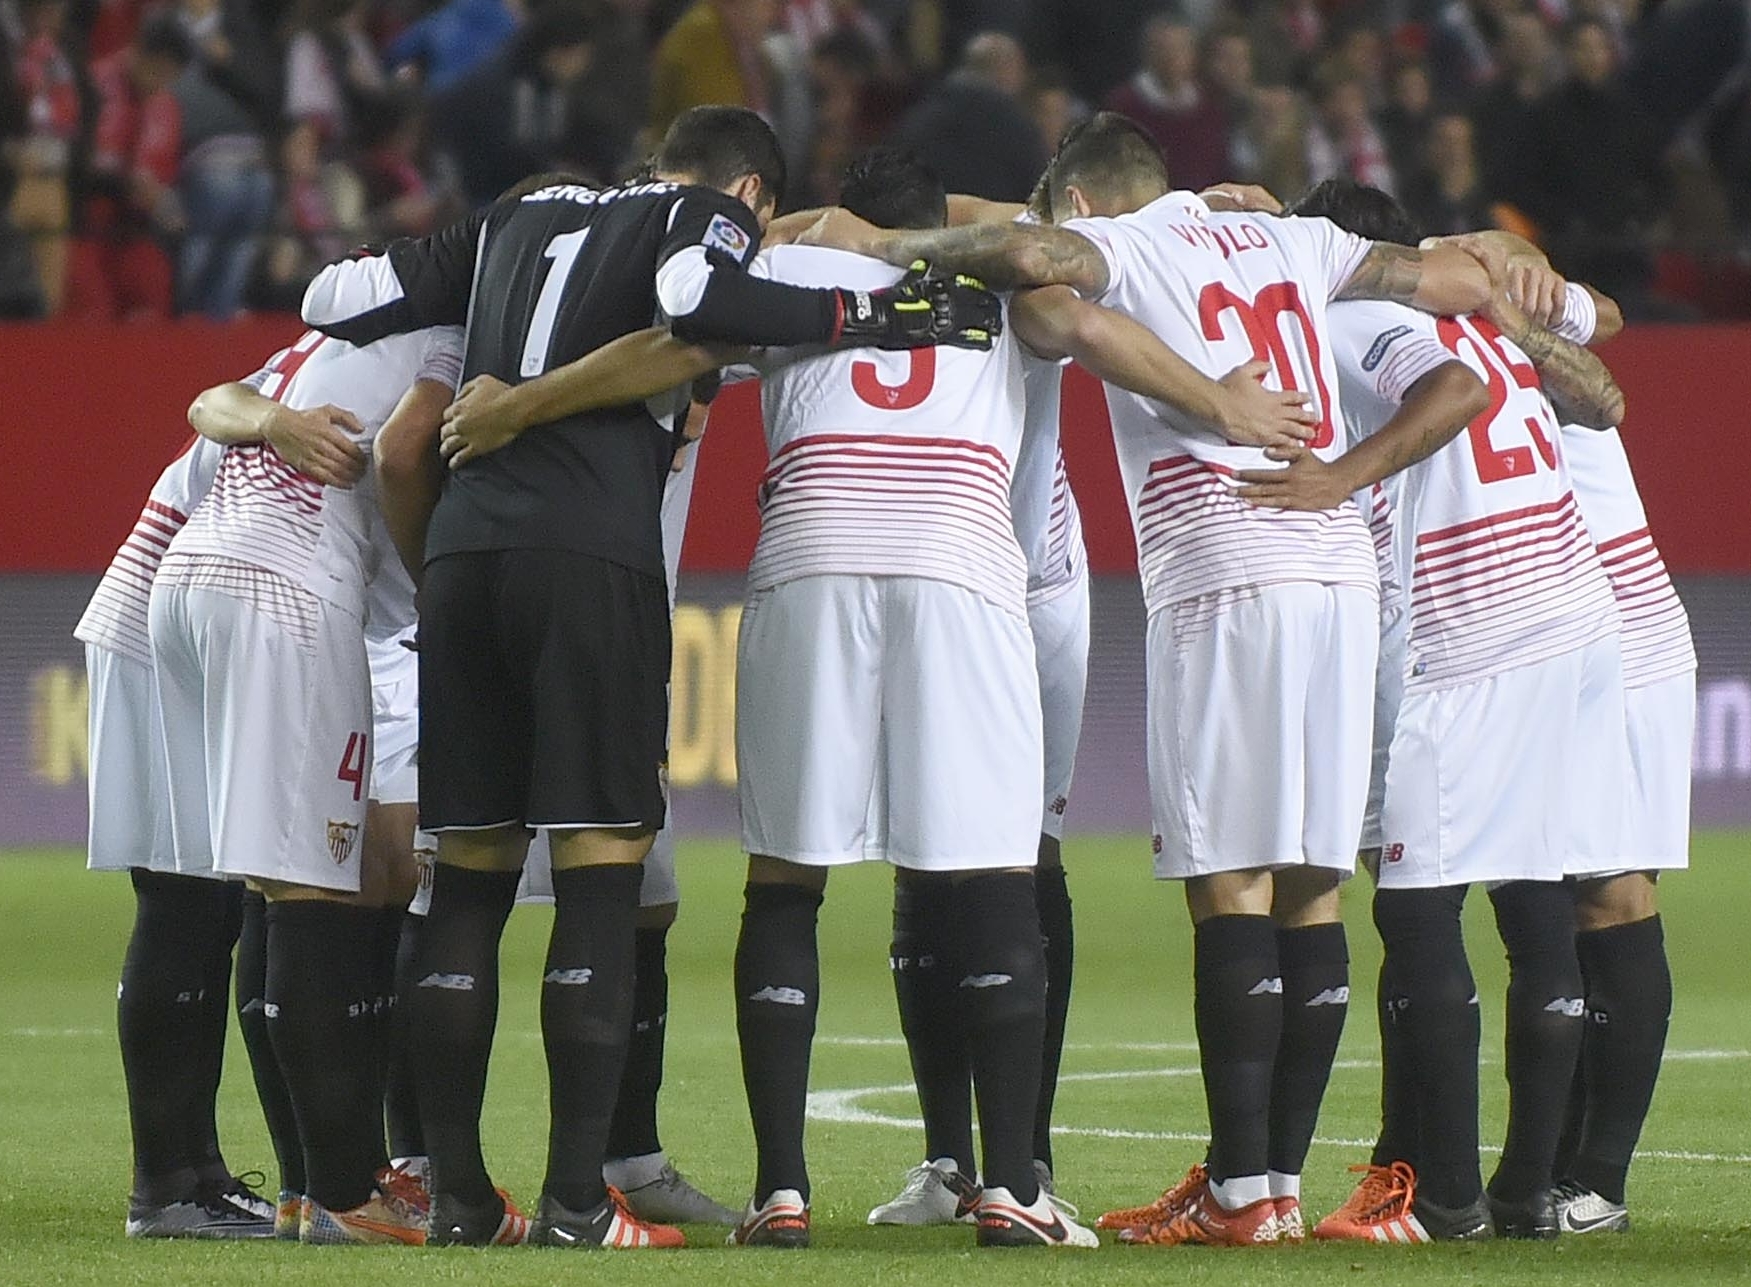 Grupo abrazado antes del partido ante el Valencia